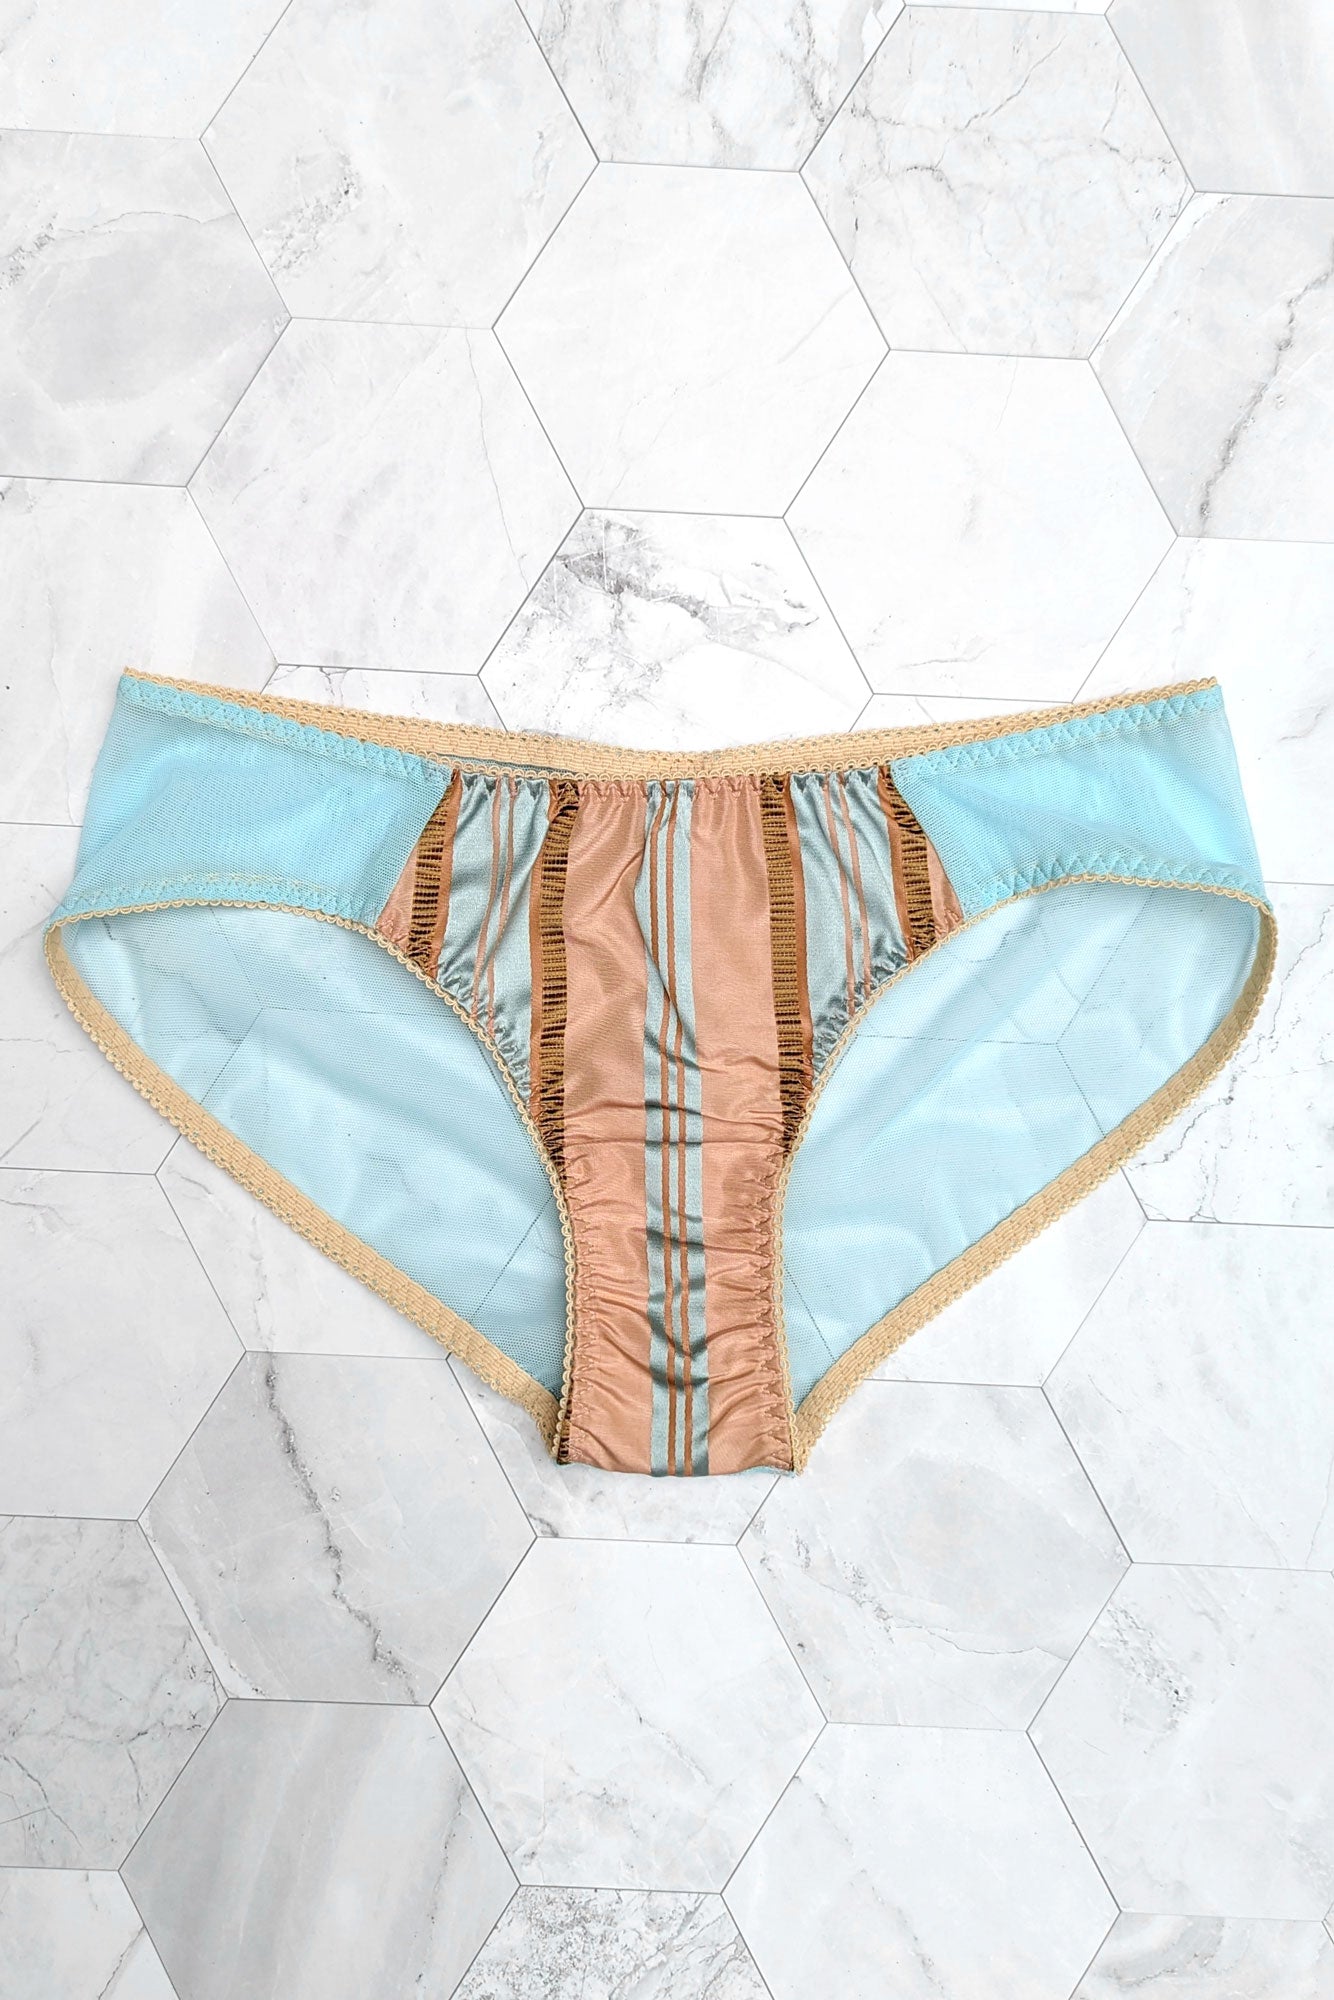 Vintage-inspired Marianne panties, handmade in 100% silk satin